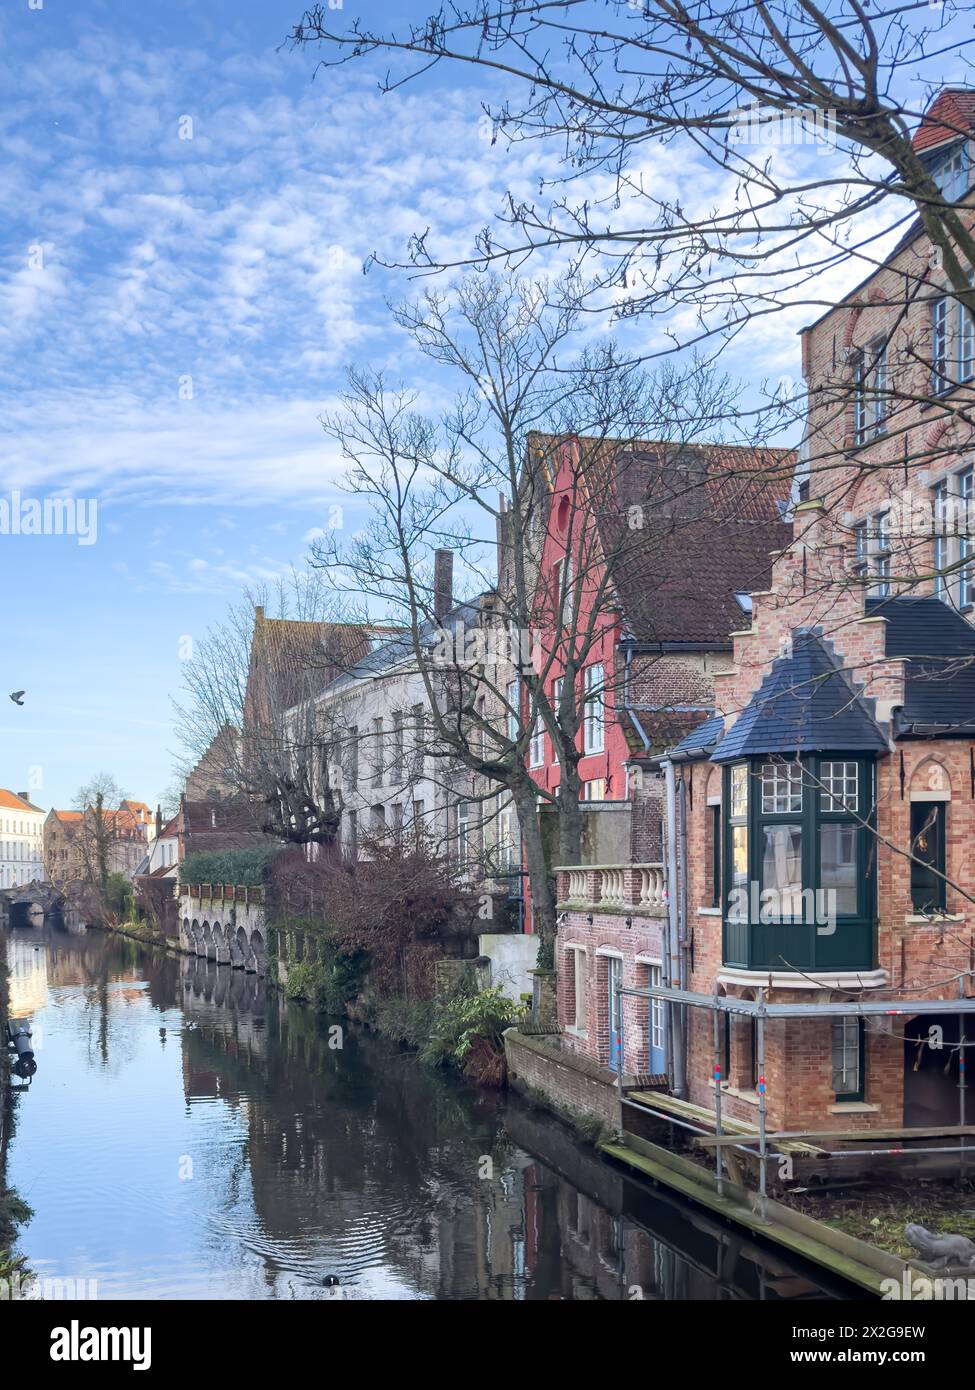 L'edificio storico del Belgio si affaccia sul famoso luogo turistico di Bruges e sui canali storici belgi di giorno. Foto Stock